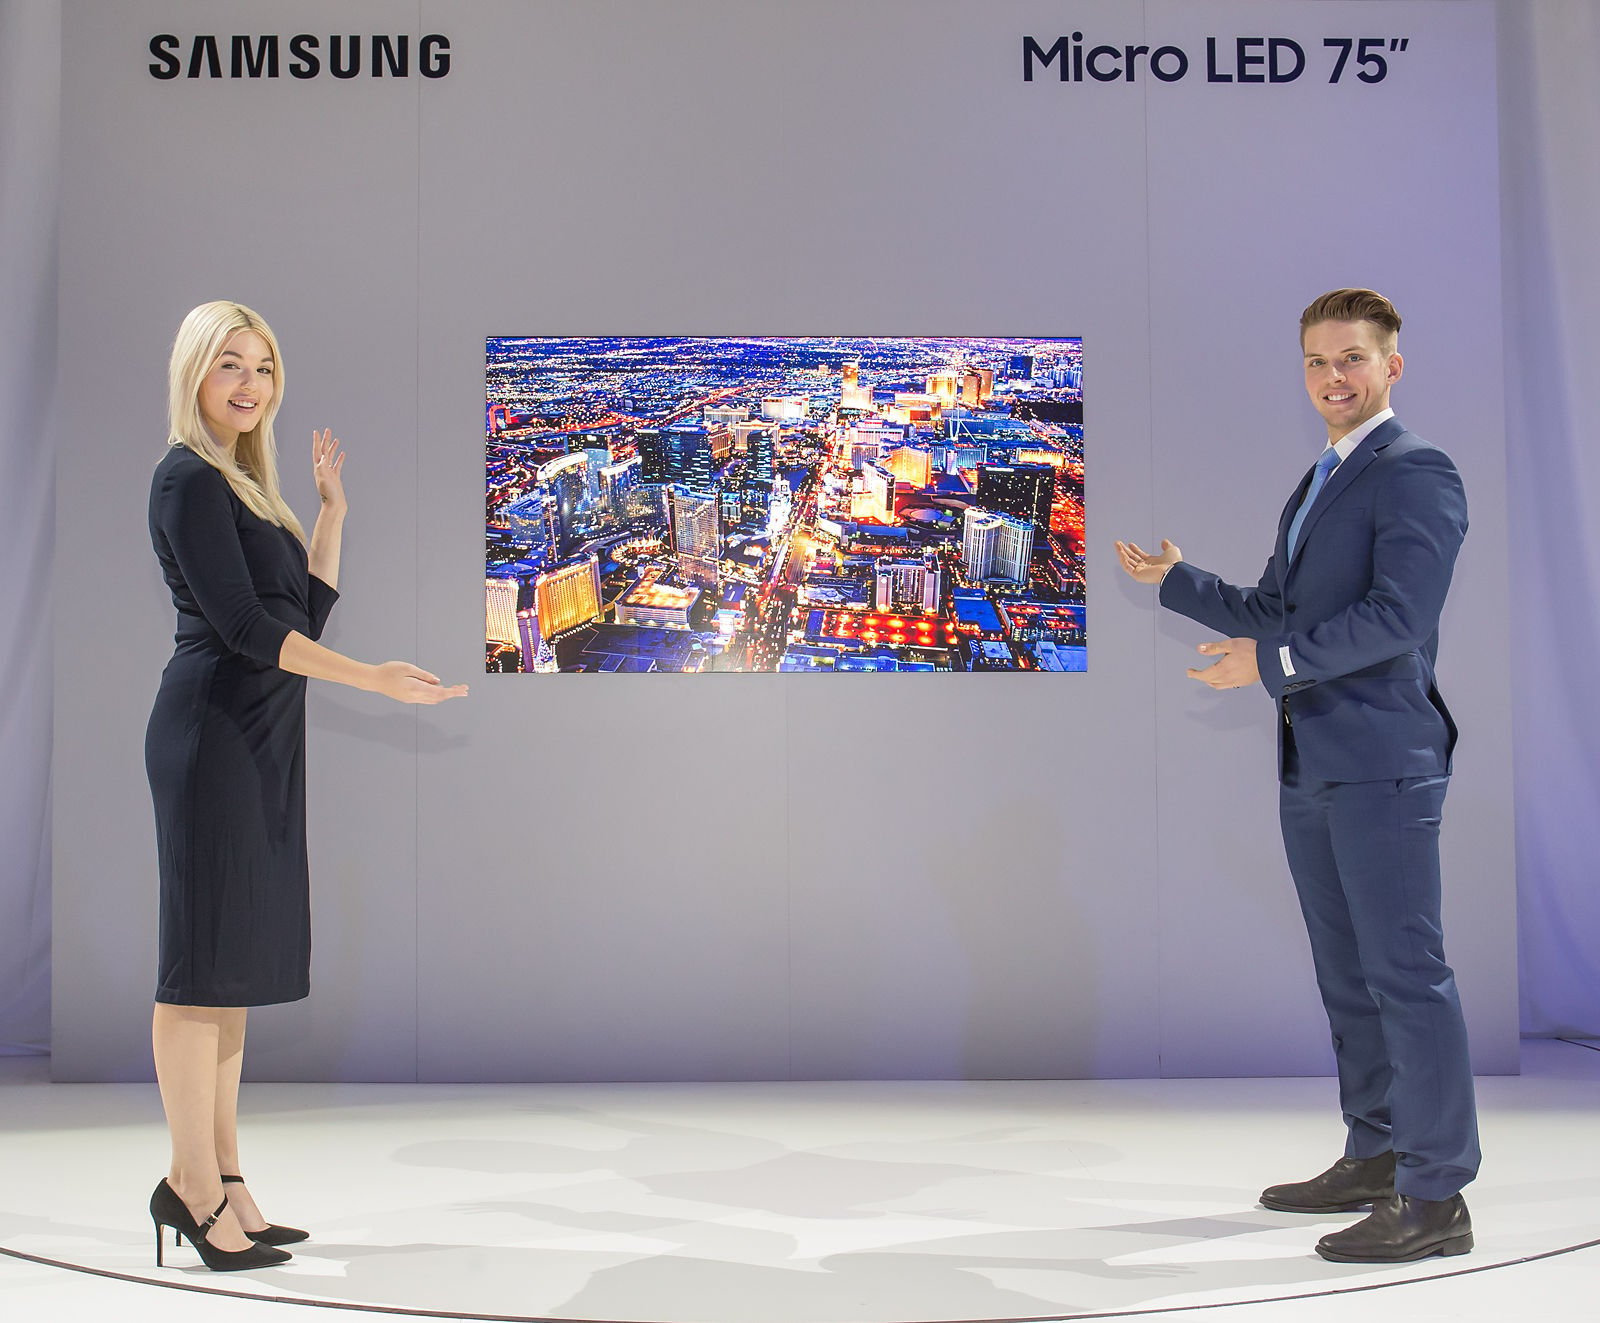 Micro LED technologie od Samsungu